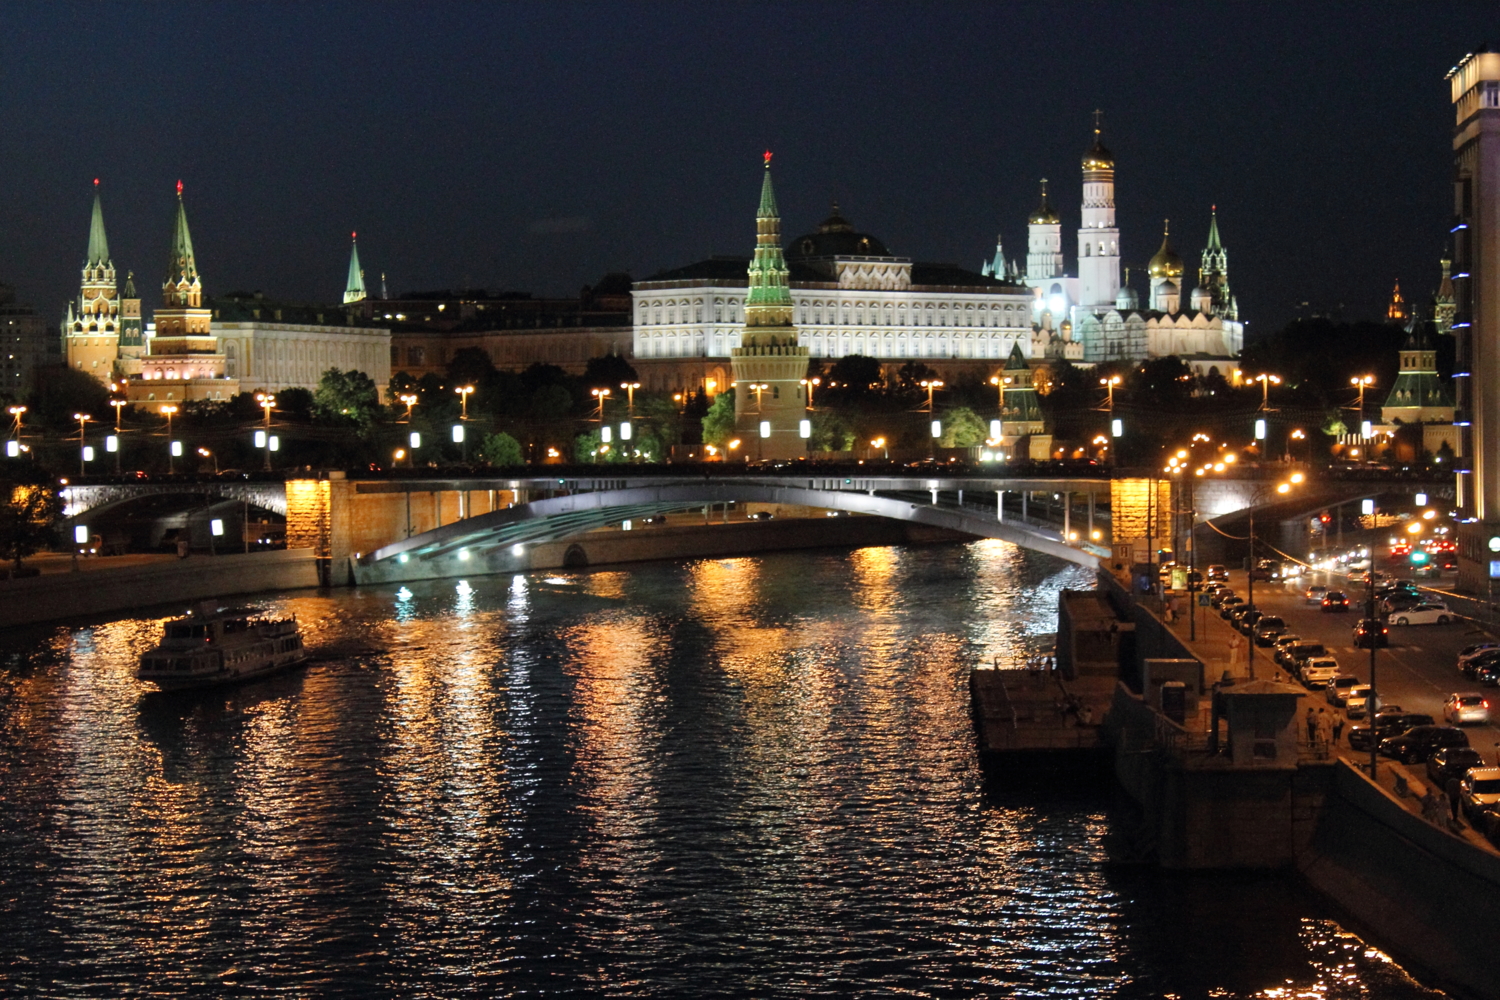 Московский Кремль в полночь